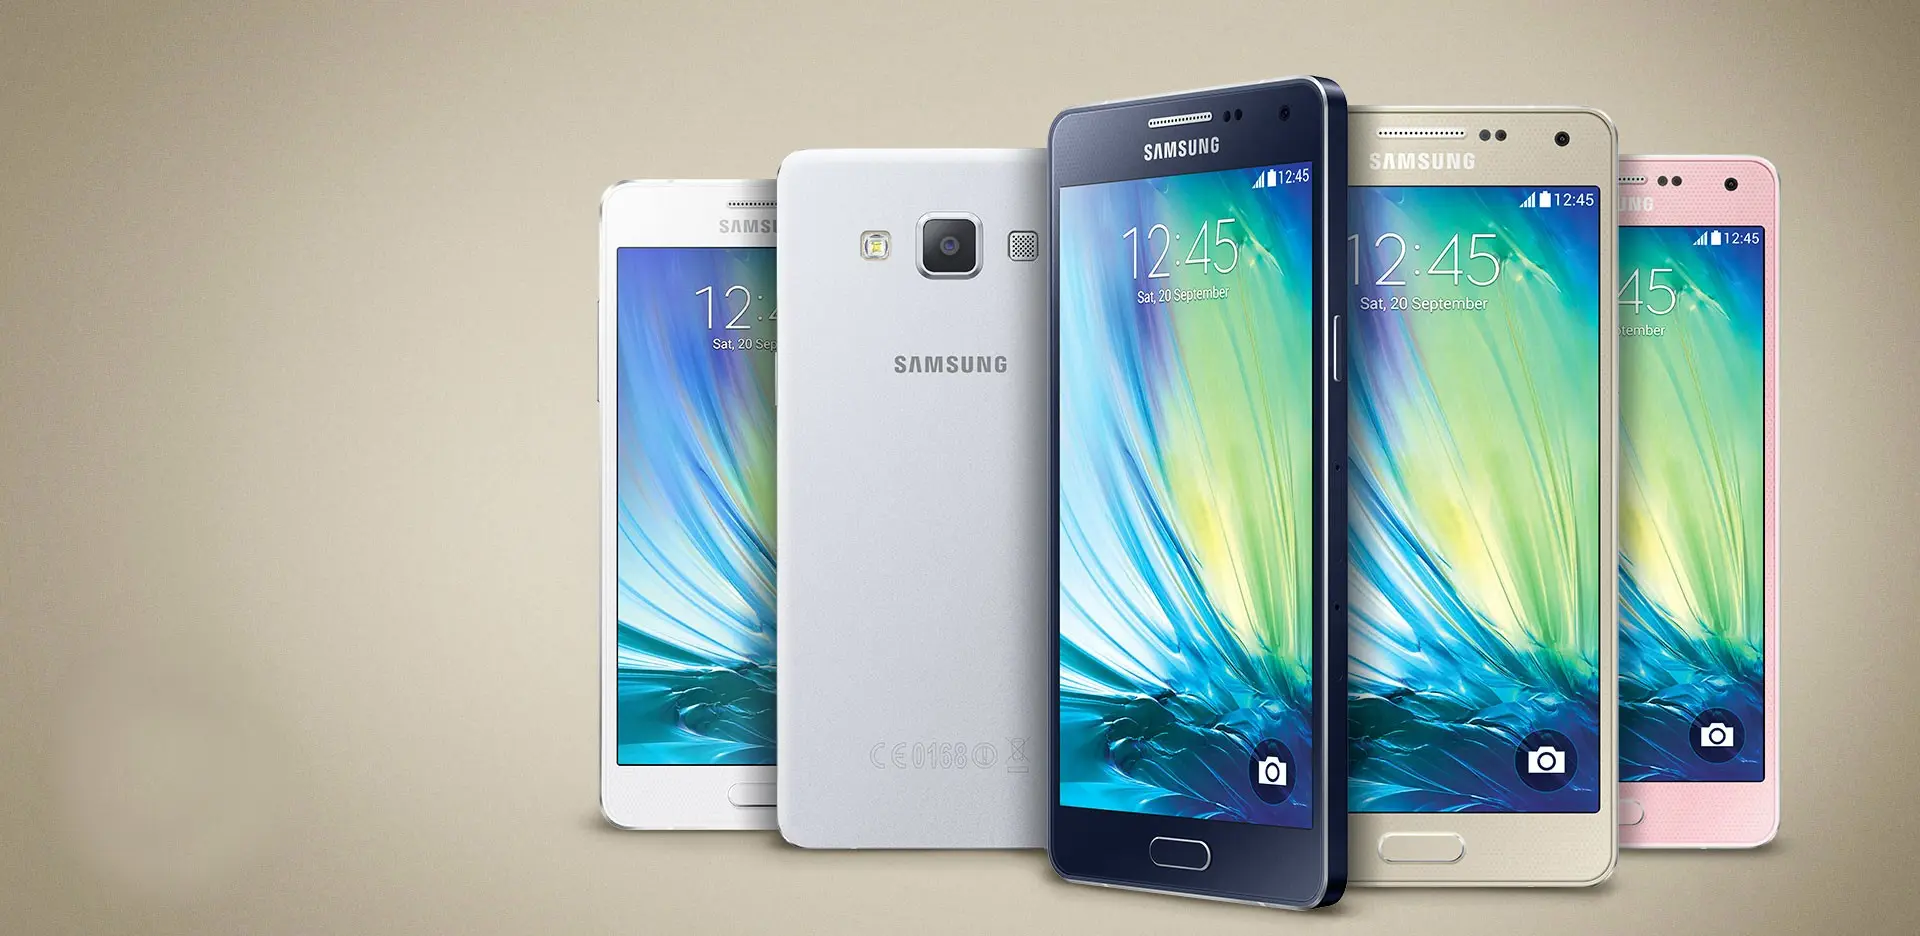 Sucesor del Galaxy A5 aparece en benchmarks